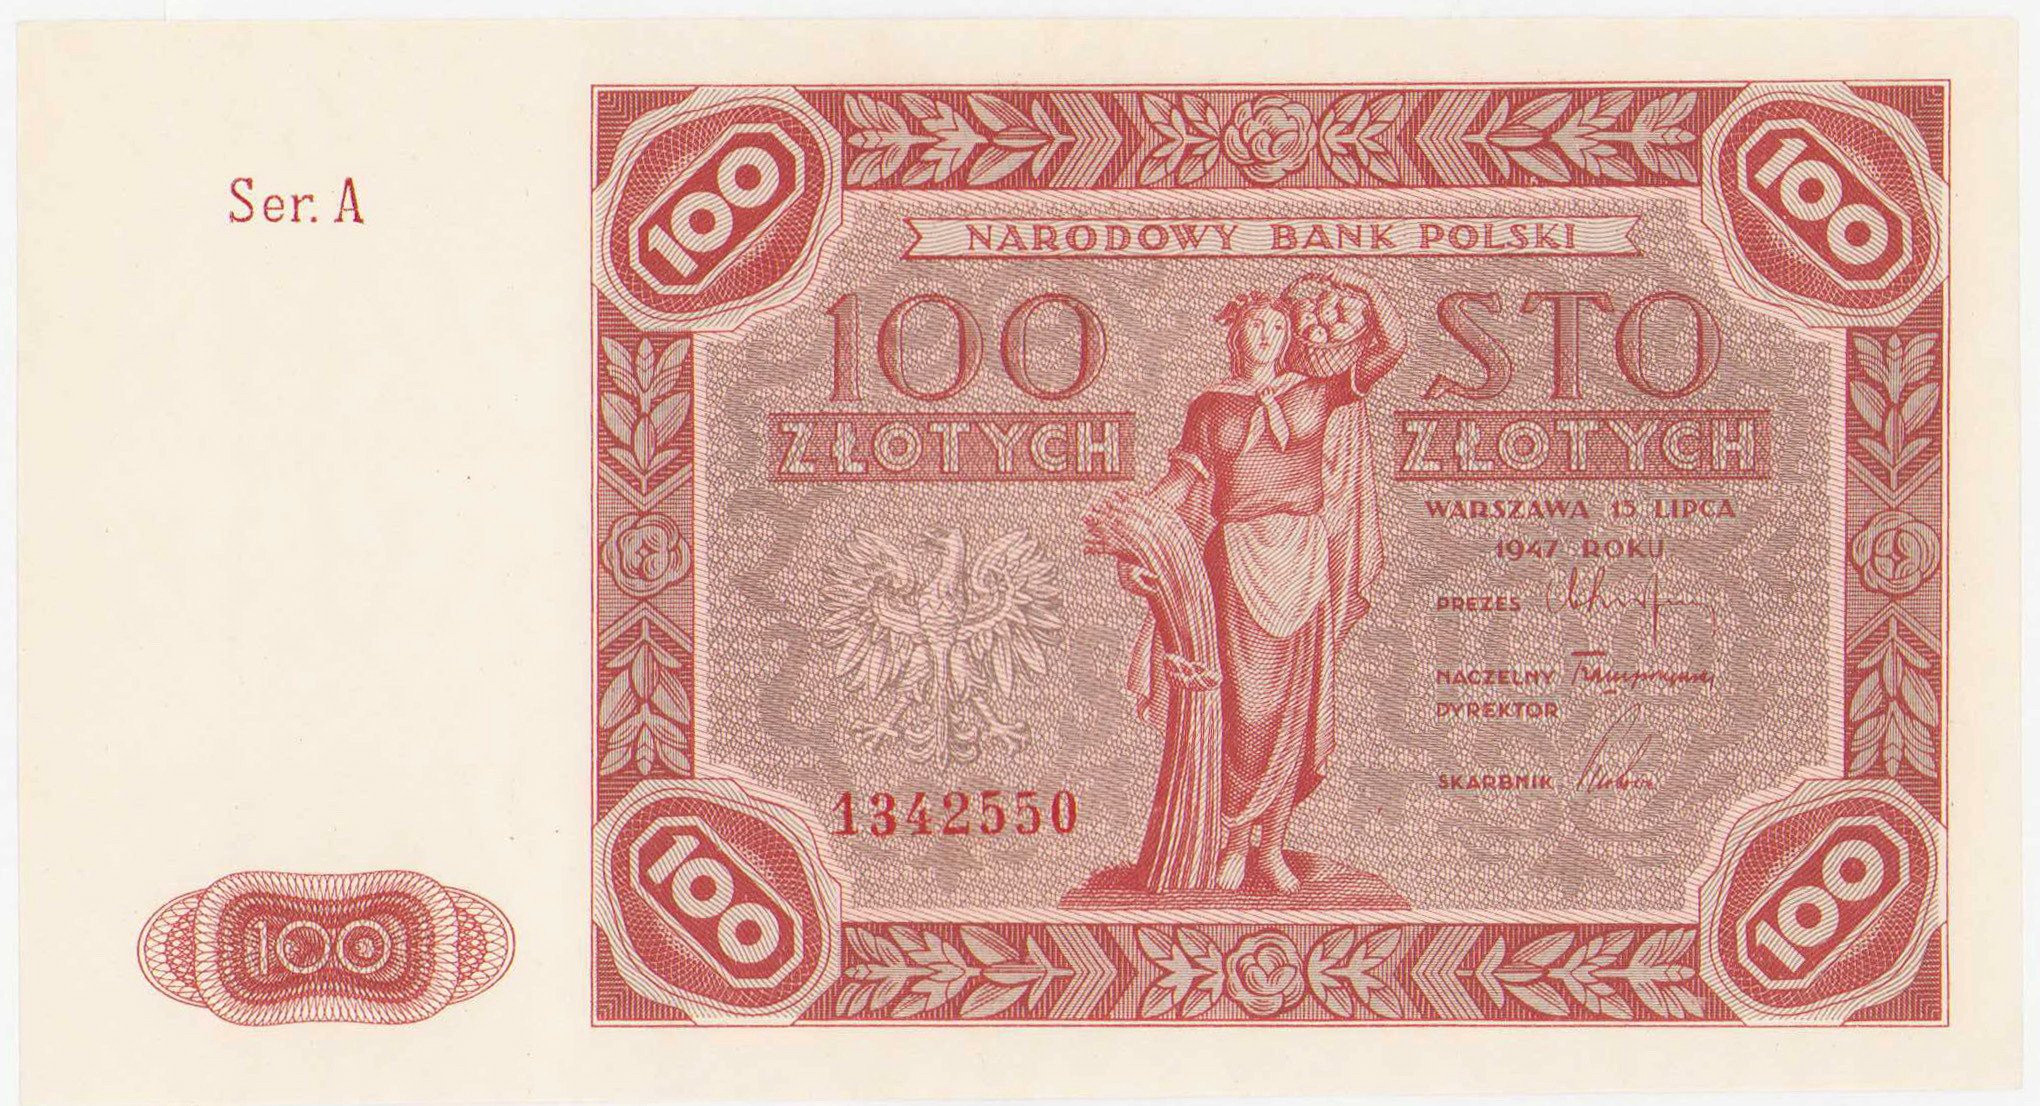 100 złotych 1947 seria A - PIĘKNE